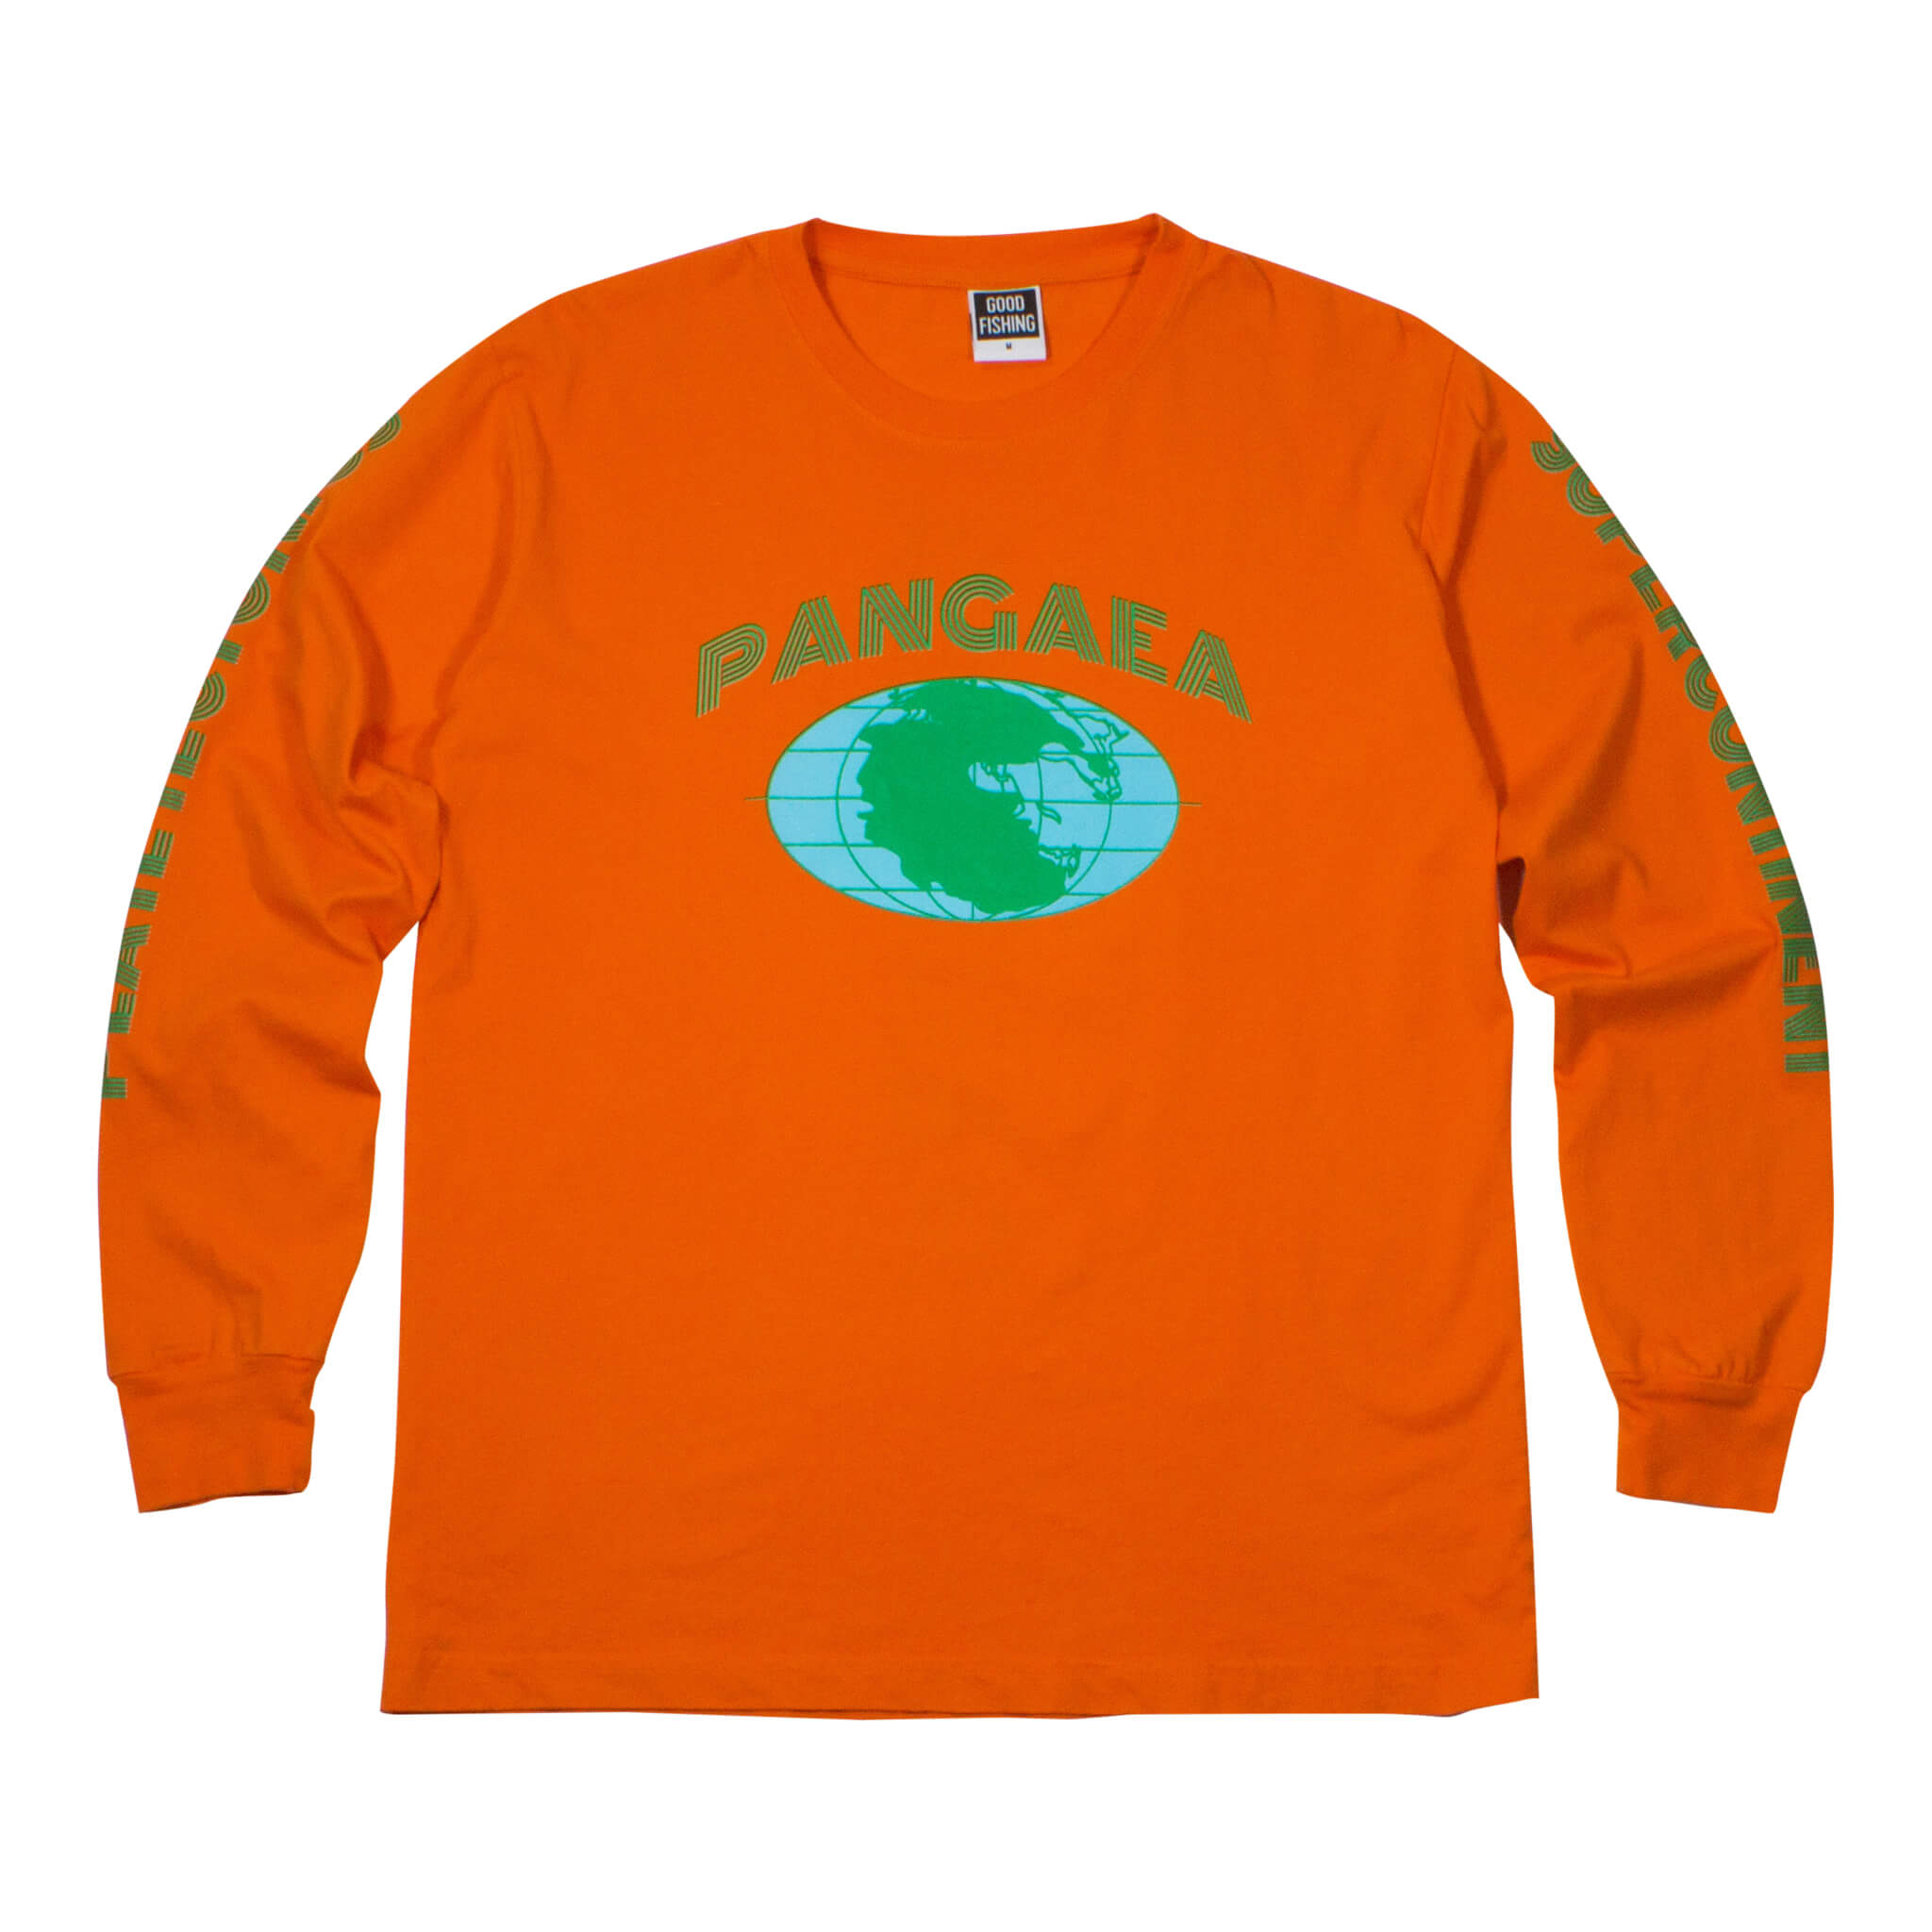 Good_Fishing_Pangaea_Organic_Cotton_Long_Sleeve_T-Shirt_Hazard_Orange_1.jpg